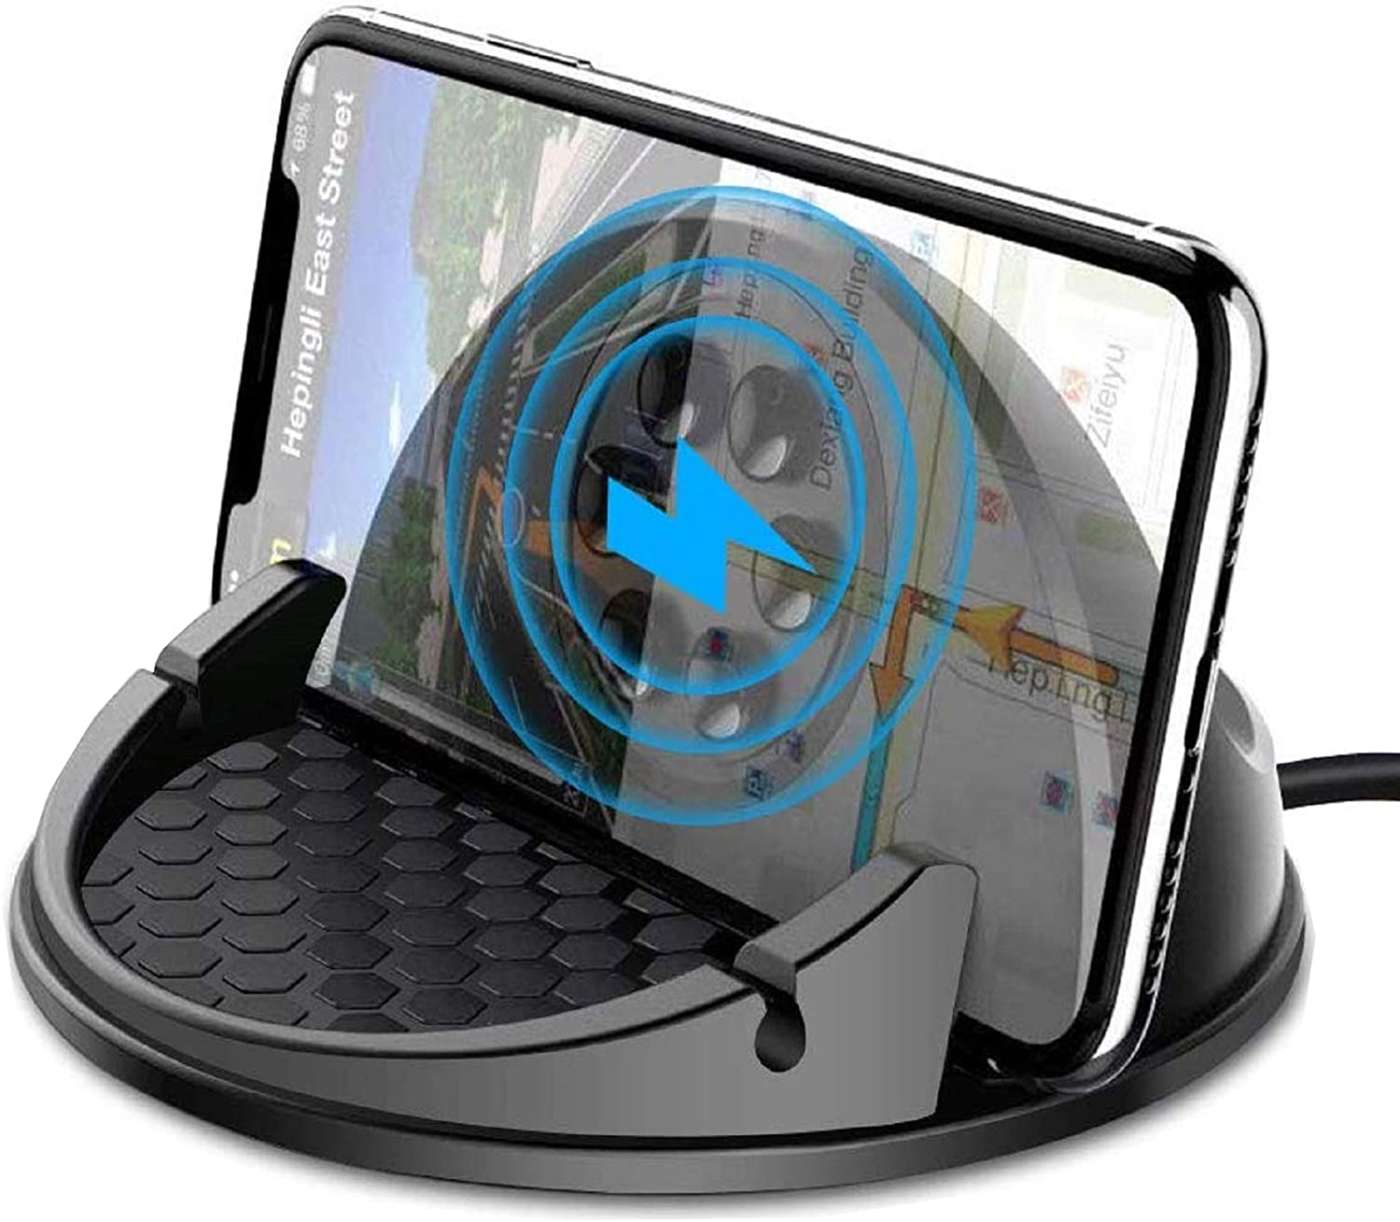 Caricabatteria da auto,porta cellulare da auto,Caricabatteria Qi Sensore a infrarossi intelligente Caricabatteria da auto Wirless veloce per iPhone Xs XR X Samsung S9 S8 Ricarica wireless 